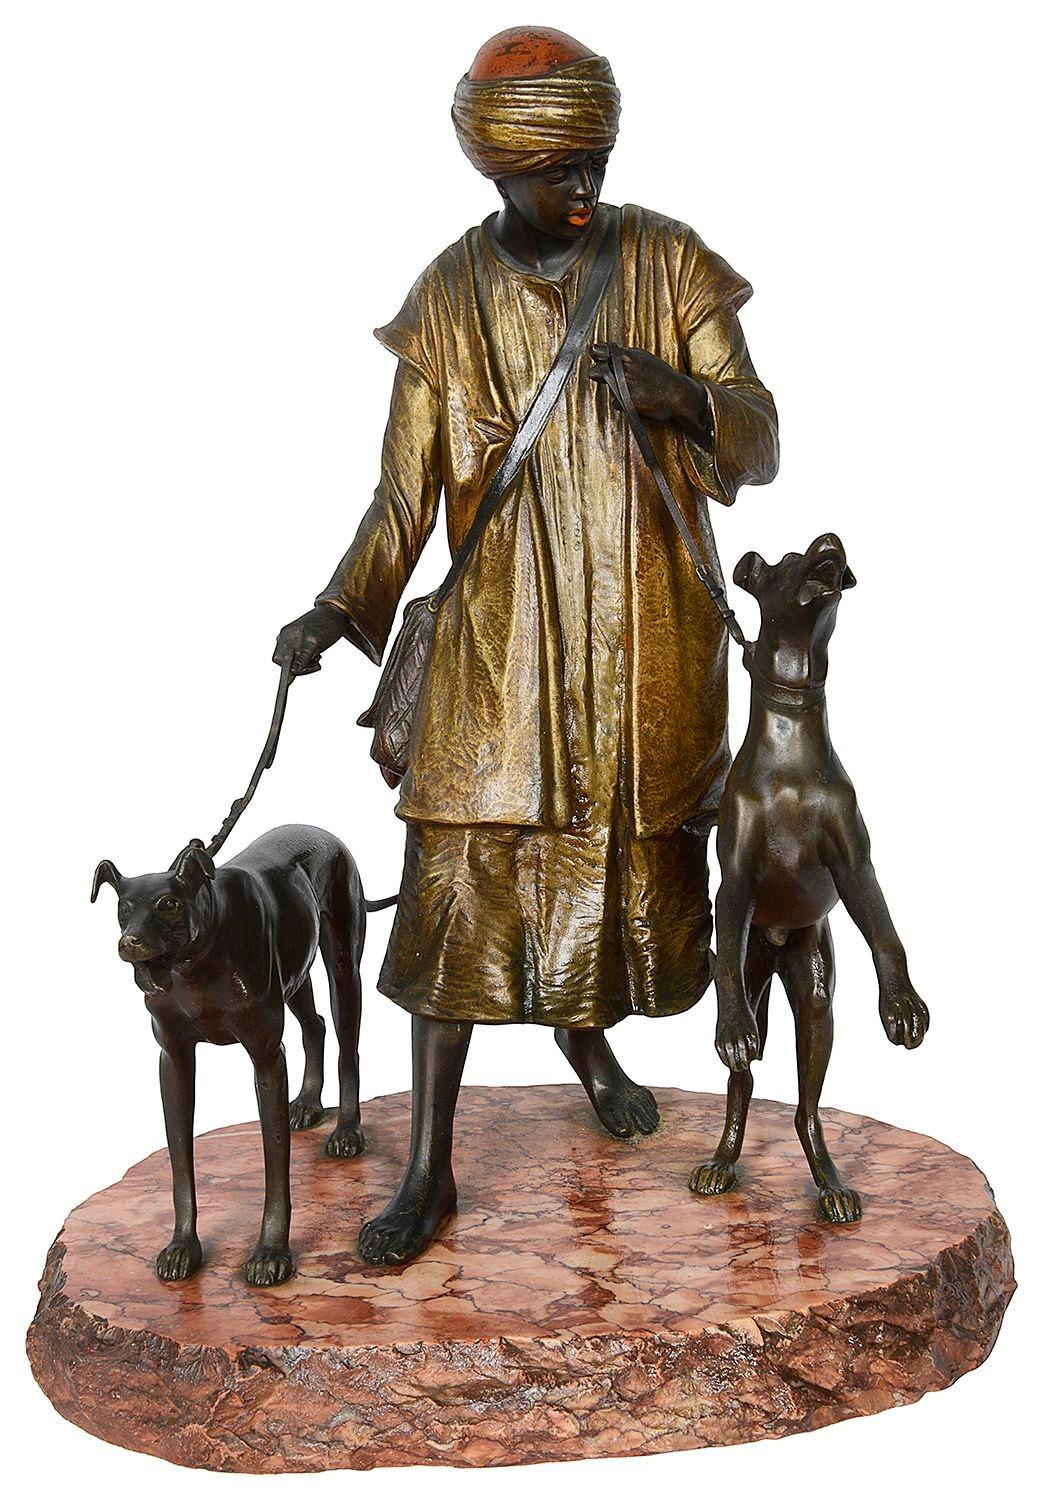 Diese wunderbare Qualität späten 19. Jahrhundert kalt bemalte Bronzestatue eines Arabers, Houndsman, montiert auf einem Rouge-Marmorsockel, in der Art von Franz Bergman.
Franz Xaver Bergman (oder Bergmann) war ein berühmter Besitzer einer Wiener